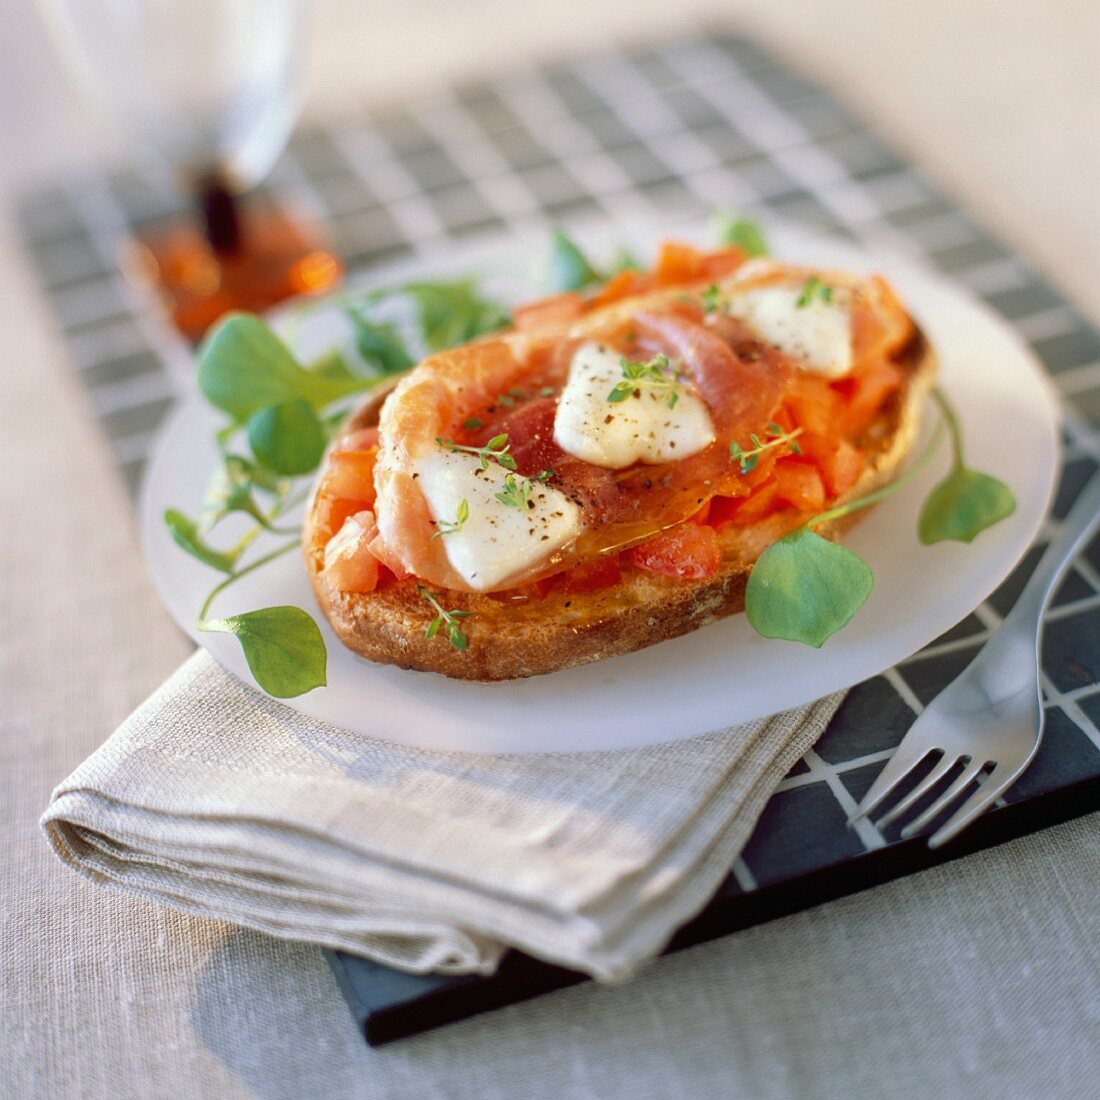 Tomato bruschetta with parma ham and mozzarella